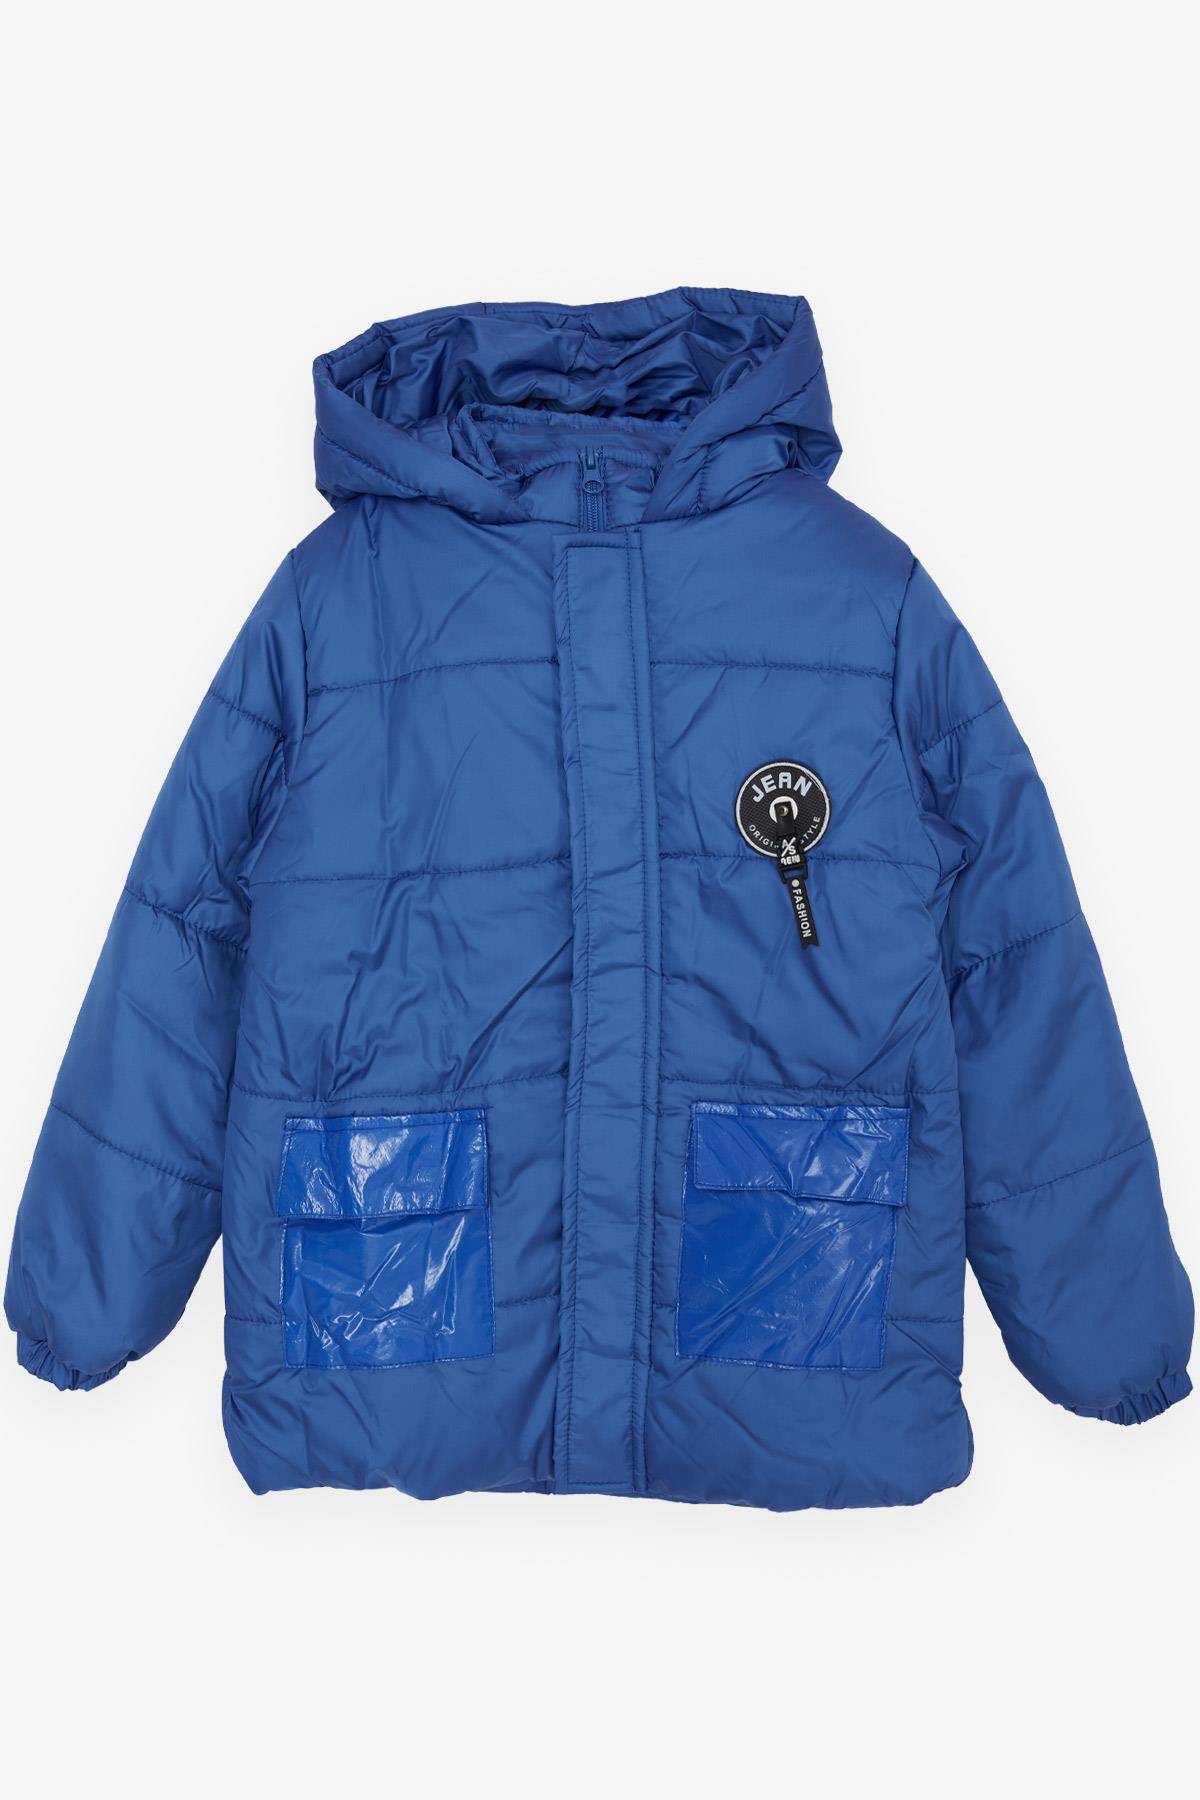 Erkek Çocuk Mont Fermuarlı Kapüşonlu Armalı Saks Mavisi 6-10 Yaş - Çocuk  Mont ve Yağmurluk Modelleriı | Breeze